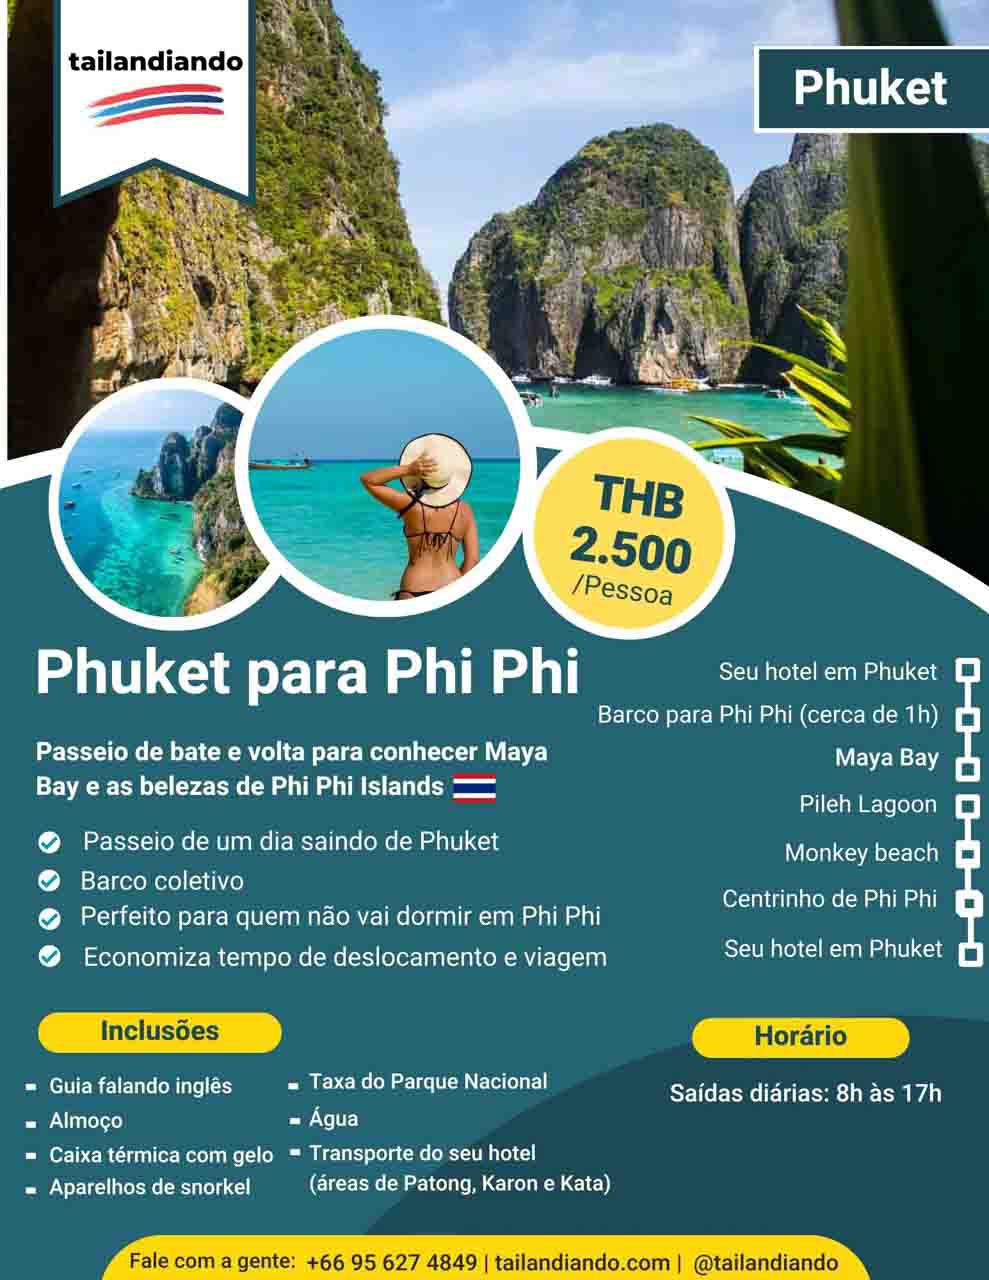 Passeio de Phuket para Phi Phi - Passeios em Phuket - o que fazer nas praias da Tailandia